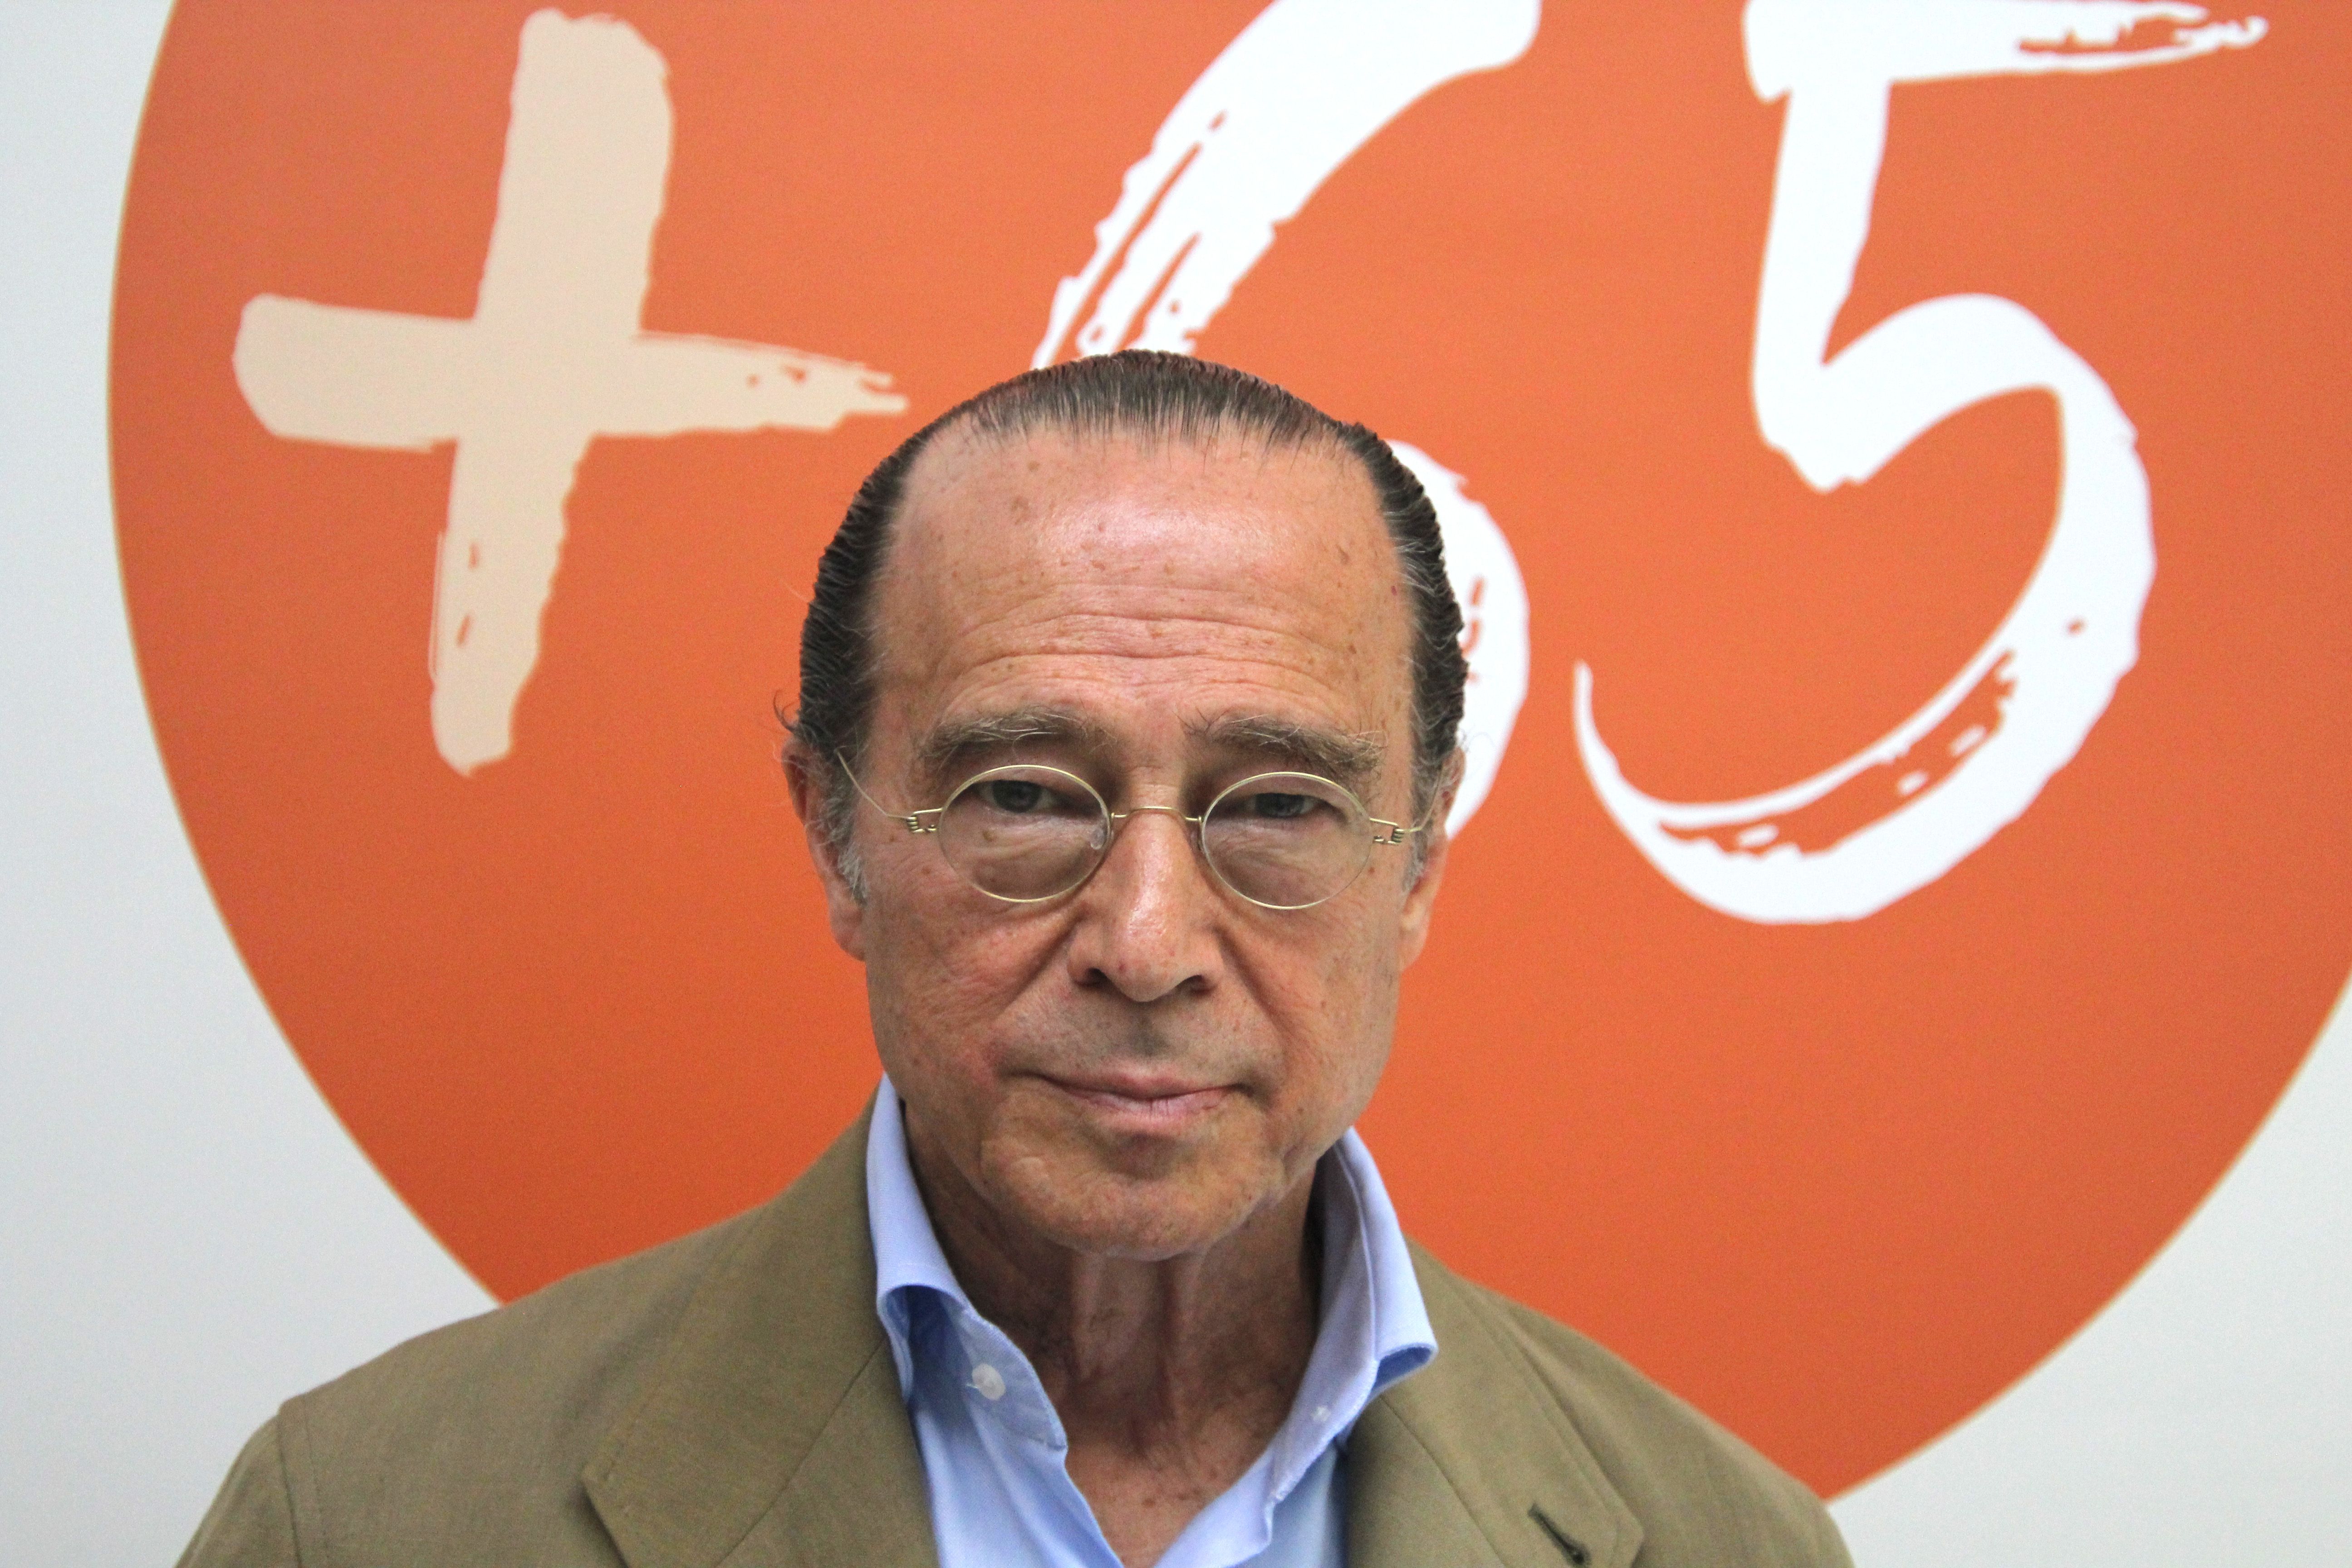 Antonio Vázquez (Córdoba, 1951), presidente de H2B2 Electrolysis Technologies y expresidente de IAG (Iberia, British Airways, Vueling y Aer Lingus), recientemente ha asumido la batuta del Comité de Expertos de Talento Sénior de 65YMÁS.